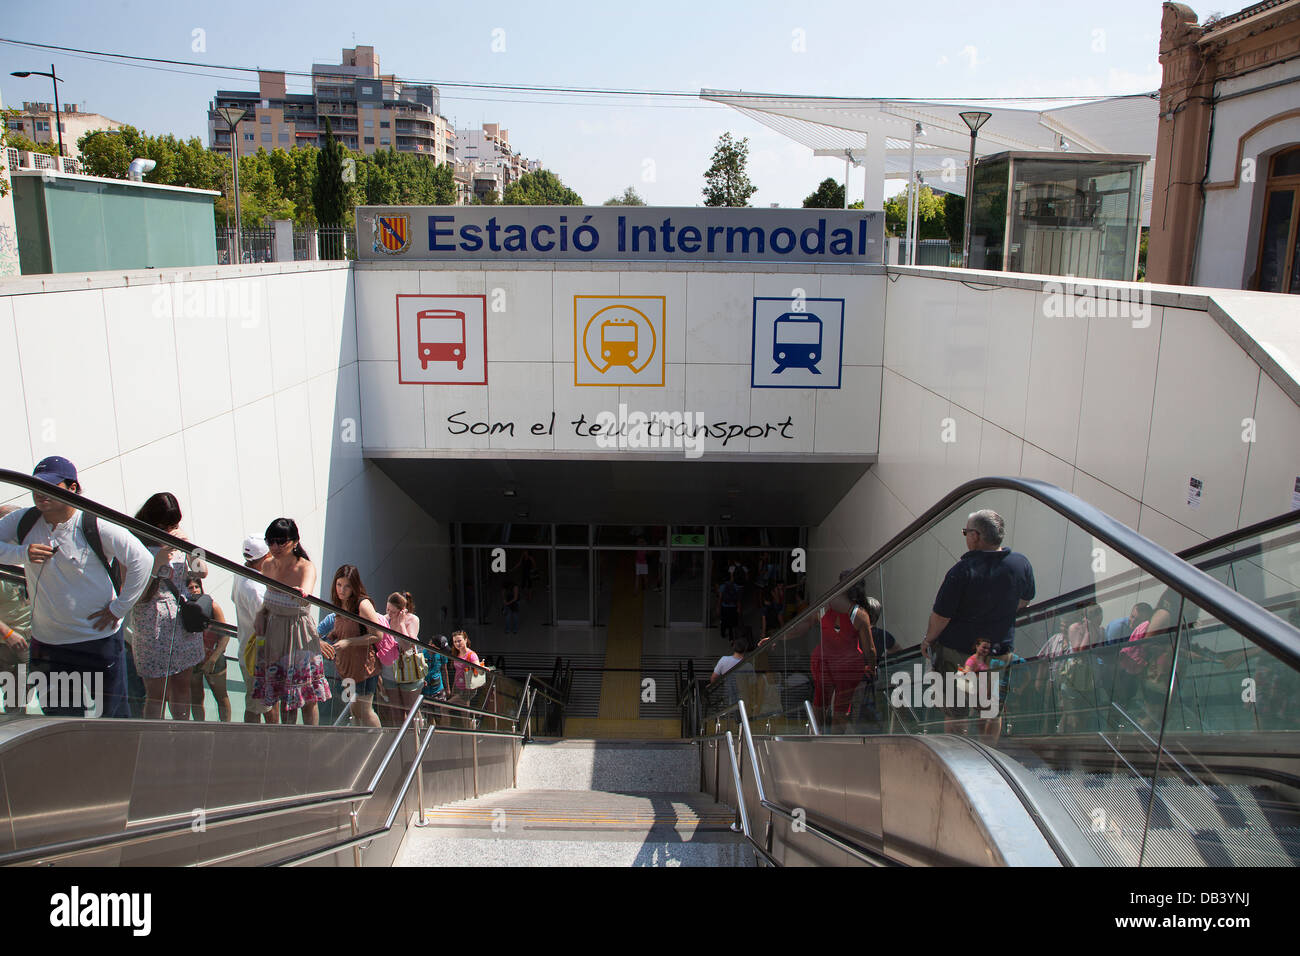 Entrada a la Estación Intermodal Estacio en Palma de Mallorca una parte del transporte de les Illes Balears red ferroviaria Foto de stock